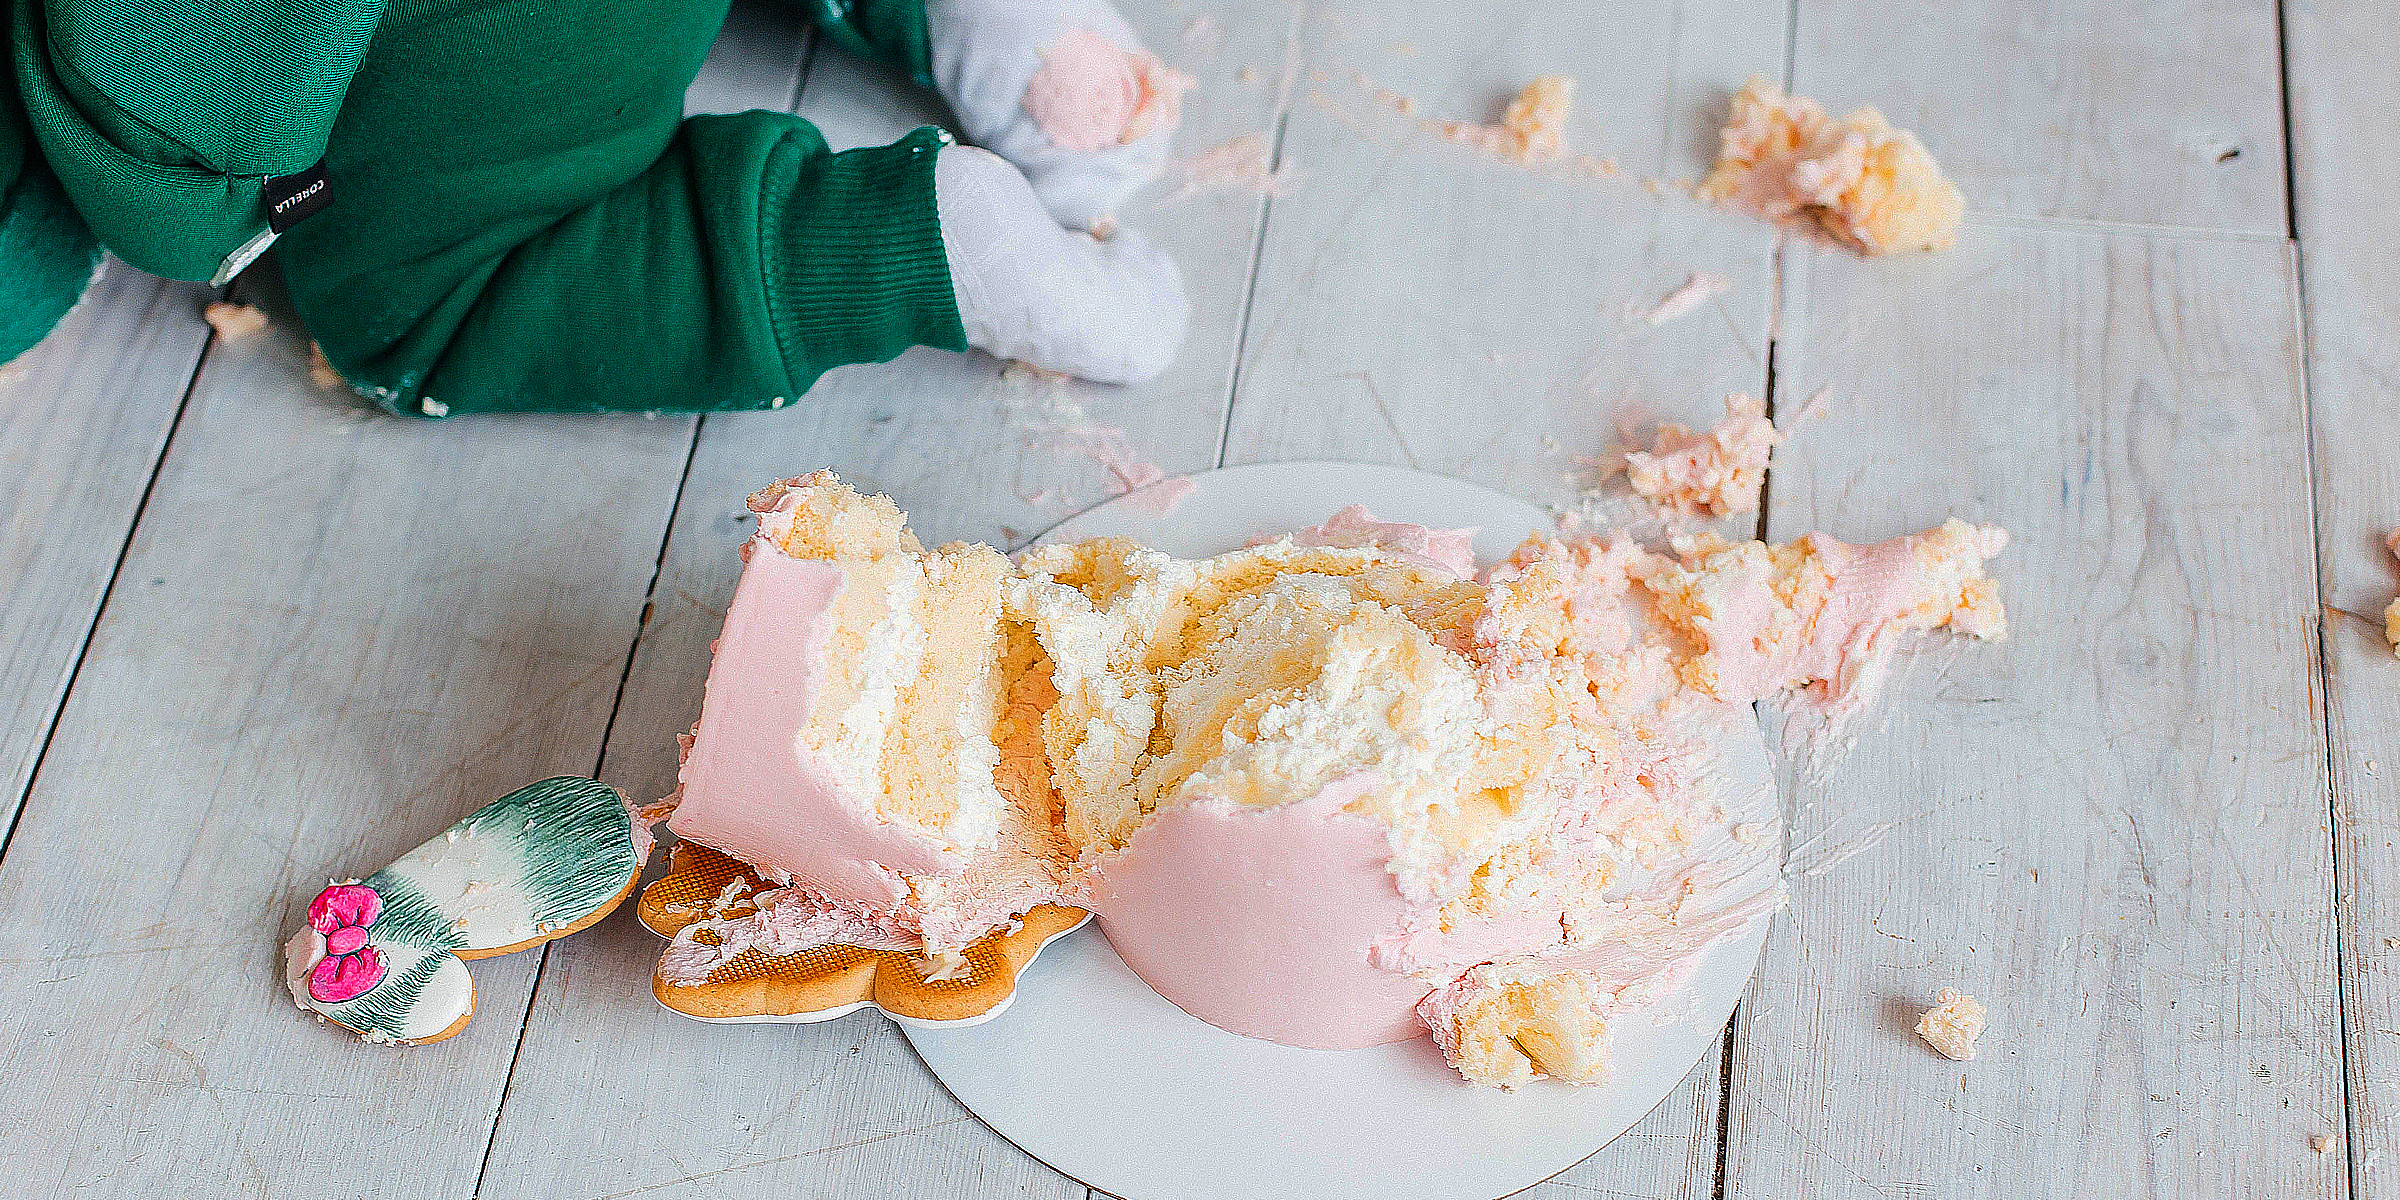 Cake having fallen on the floor | Source: Shutterstock